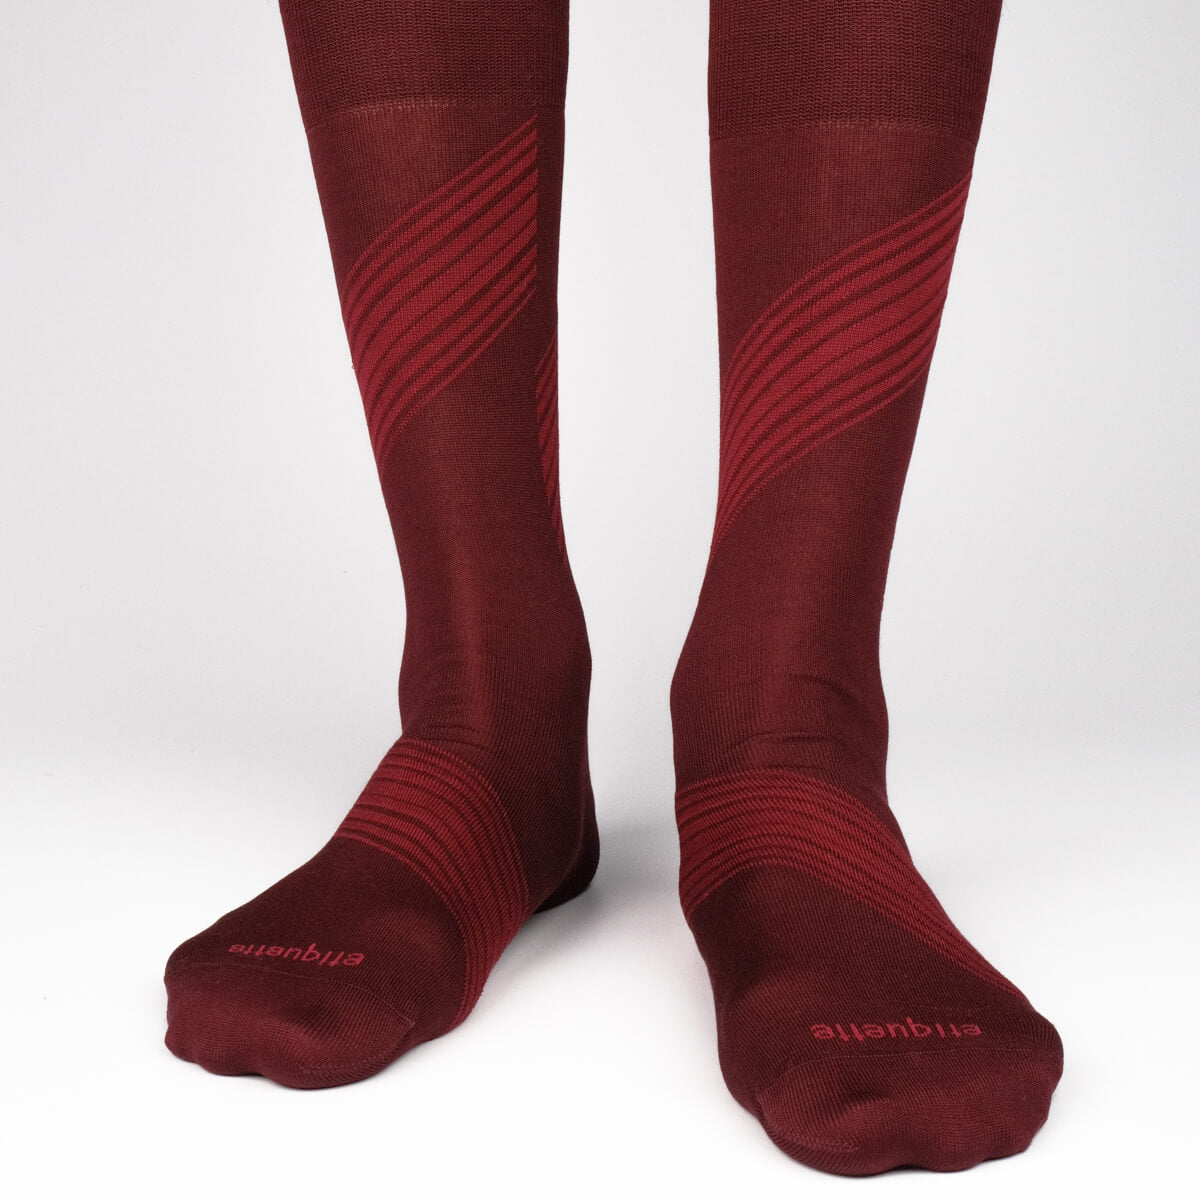 Mens Socks - Vented Stripes Men's Socks - Bordeaux⎪Etiquette Clothiers